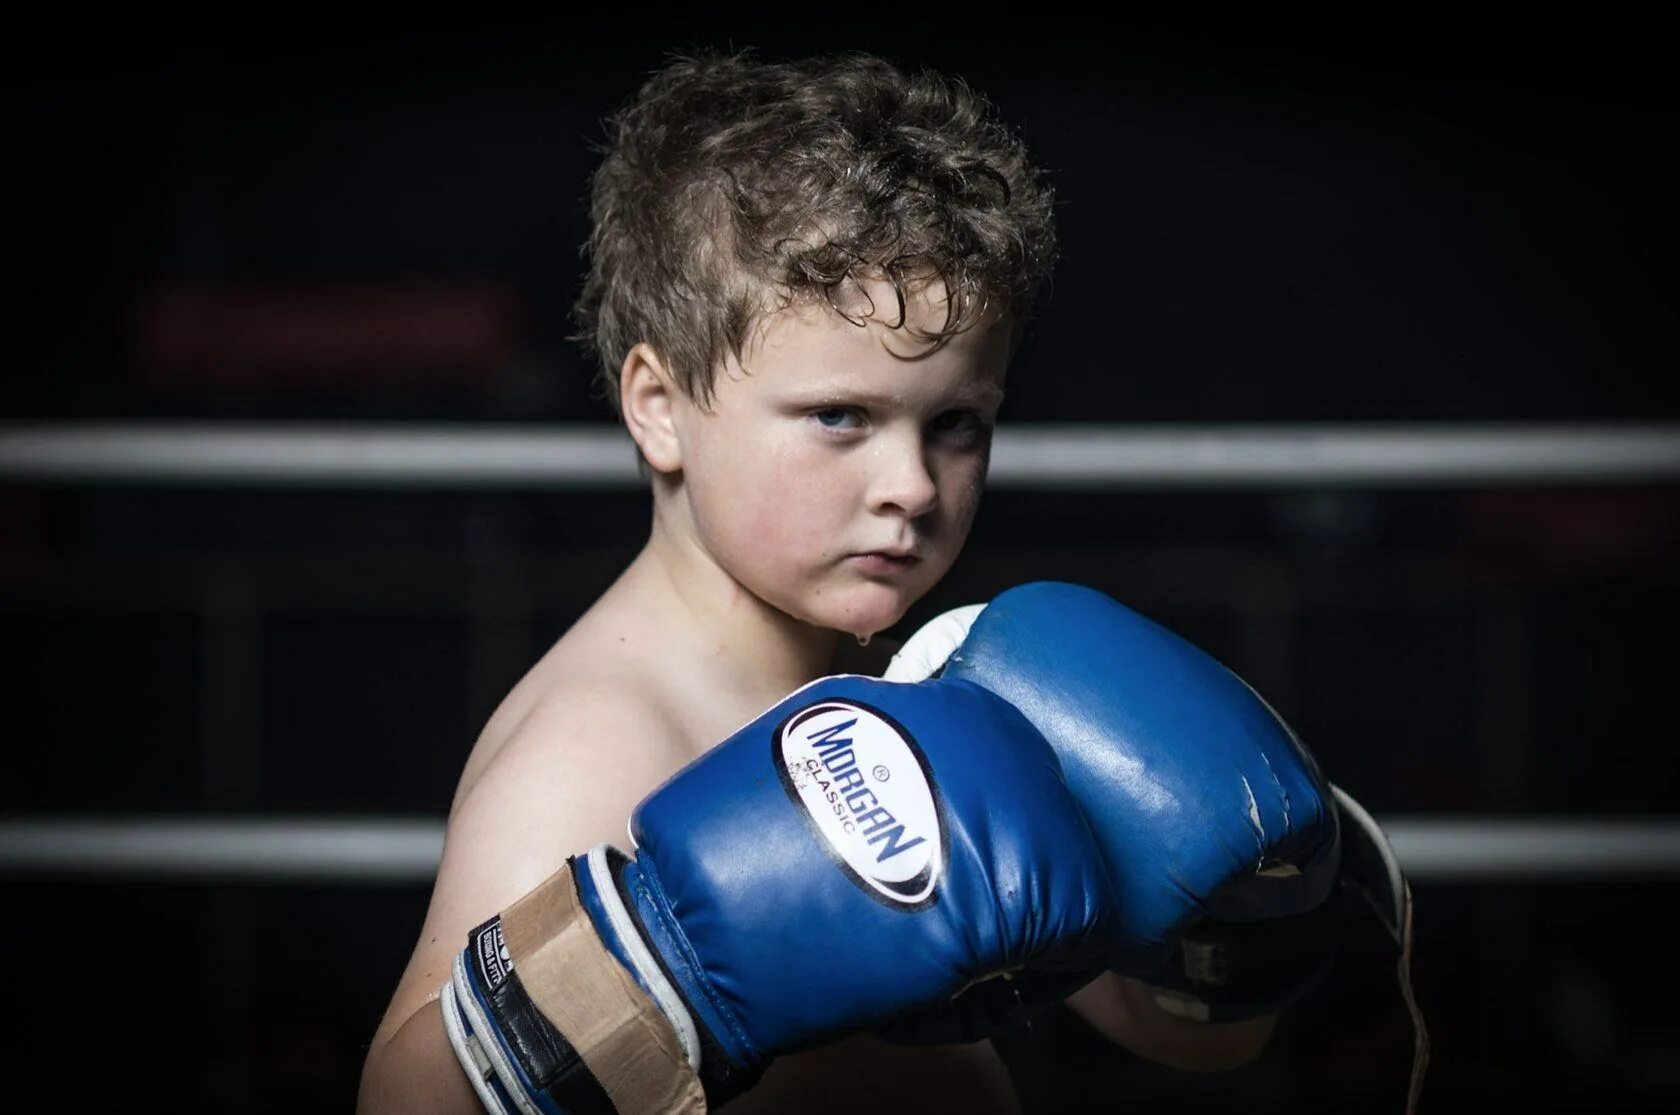 Покажи картинки бокса. Мальчик в боксерских перчатках. Ребенок боксер. Детский бокс. Бокс дети.